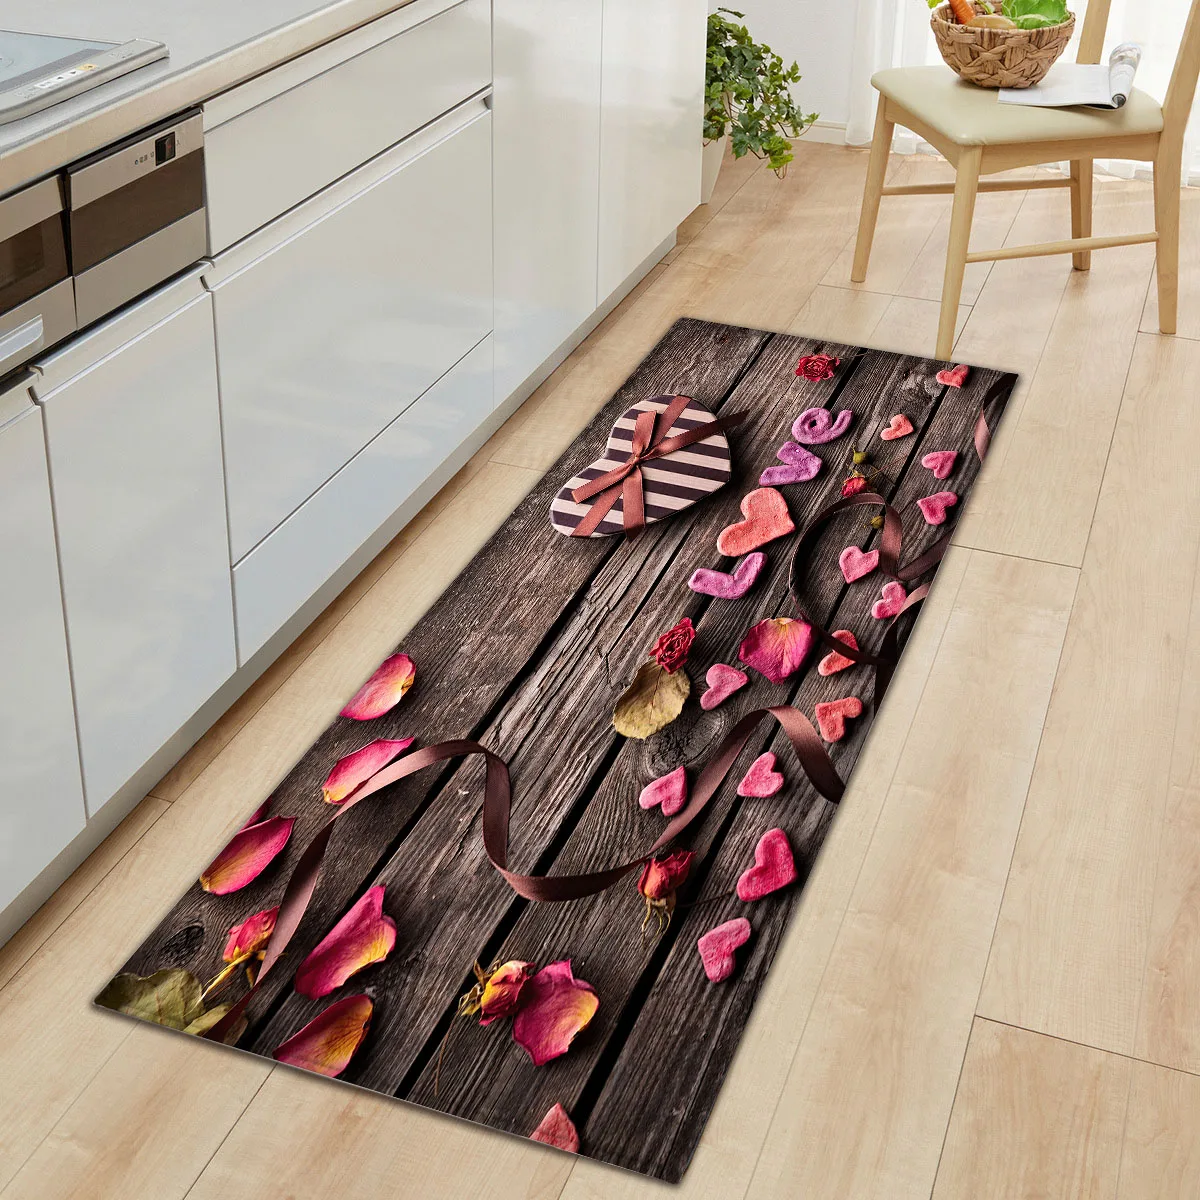 

Wood Grain Kitchen Door Mat Carpet Anti-slip Home Floor Mat Rugs Heart Shape Welcome Mats for Front Door Kitchen Living Room